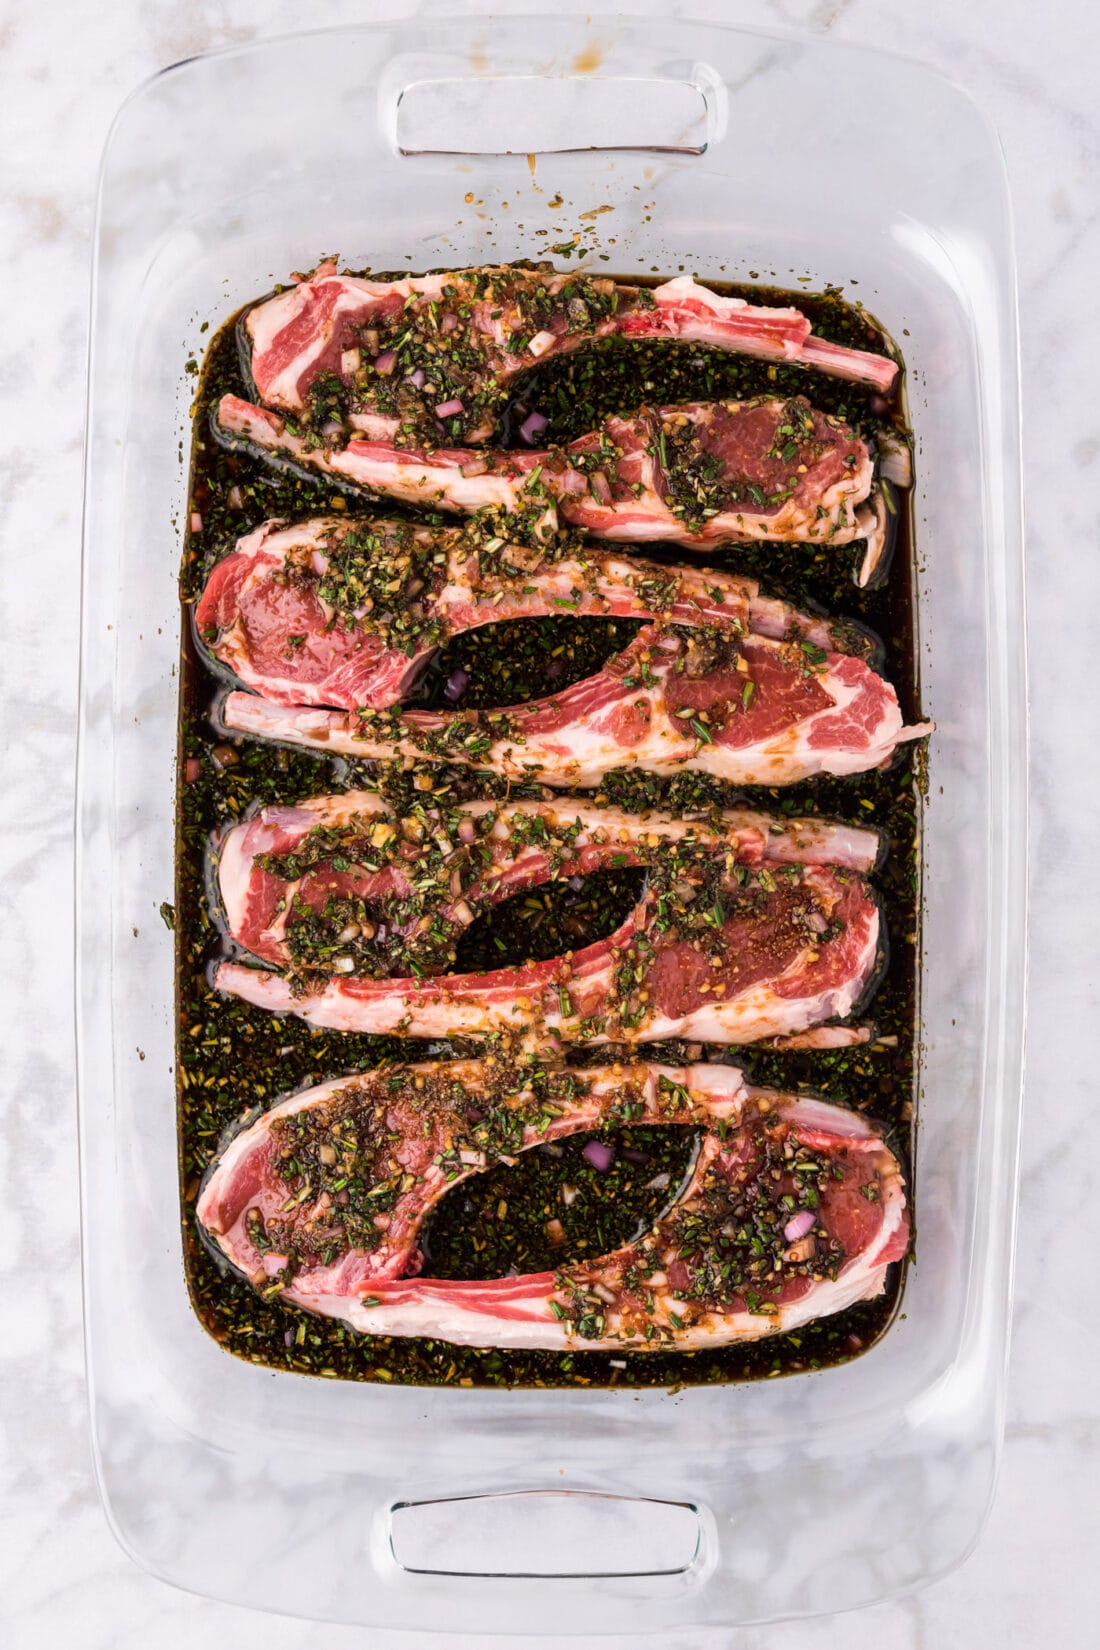 Lamb Chops and Lamb Chop Marinade sitting in a 13 x 9 pan